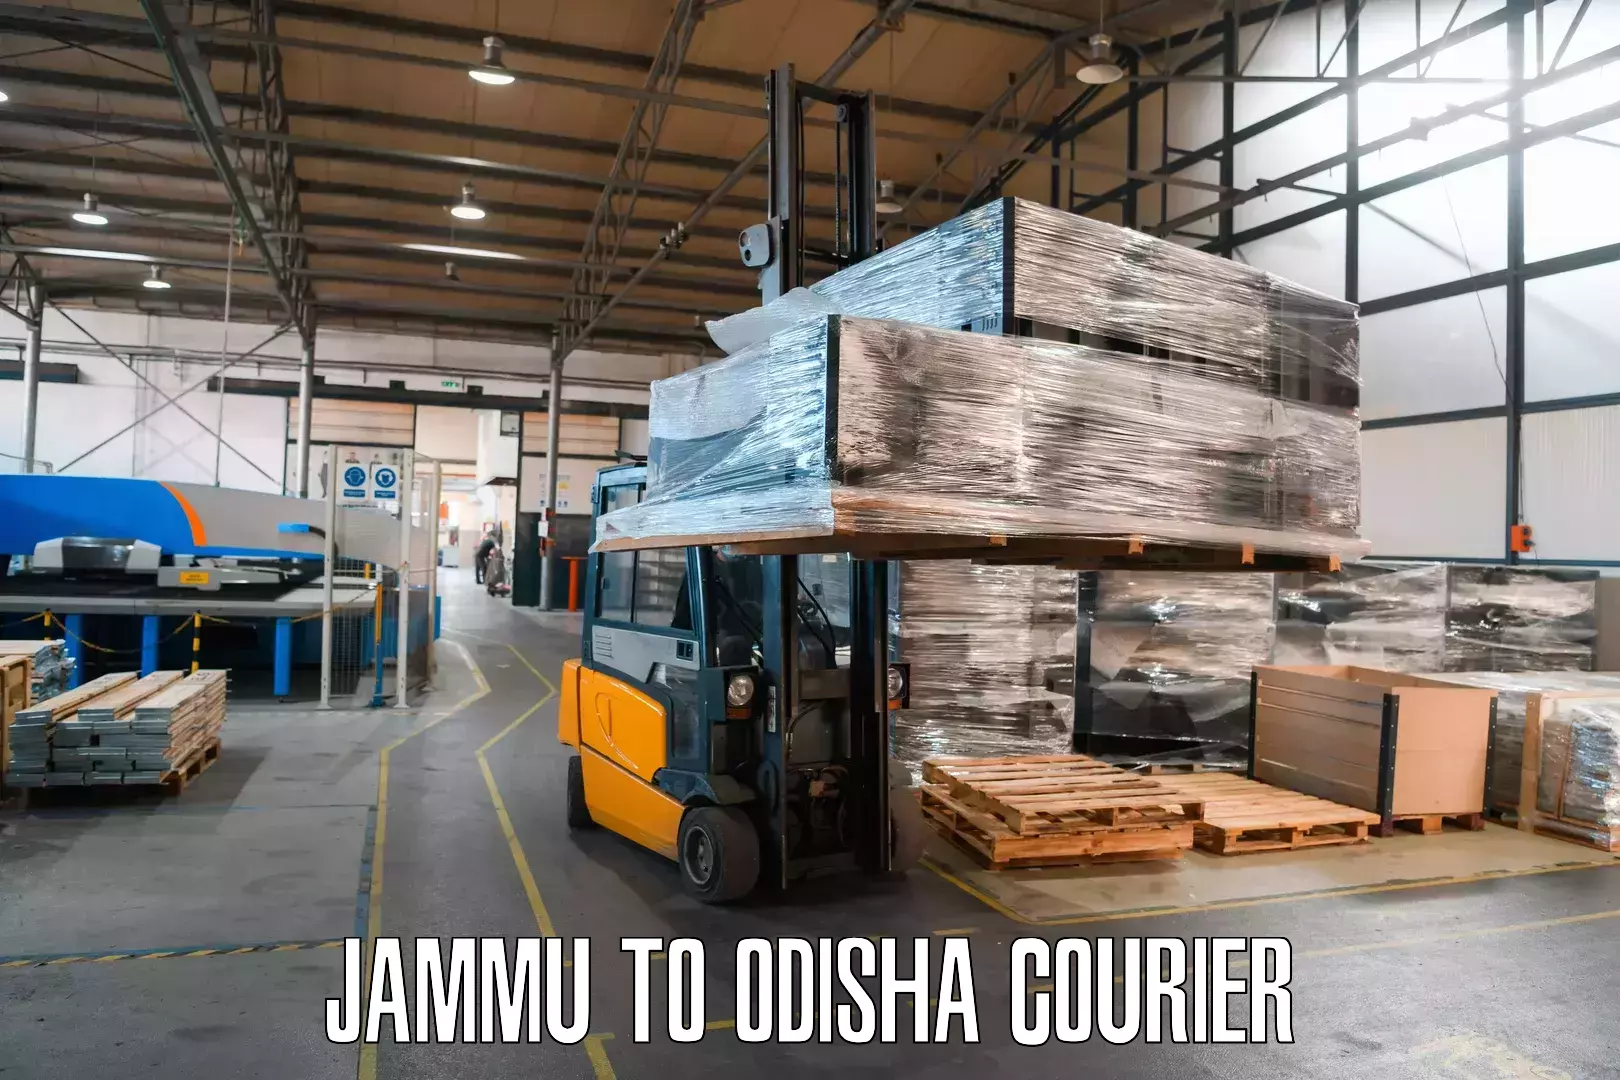 24/7 courier service Jammu to Odisha